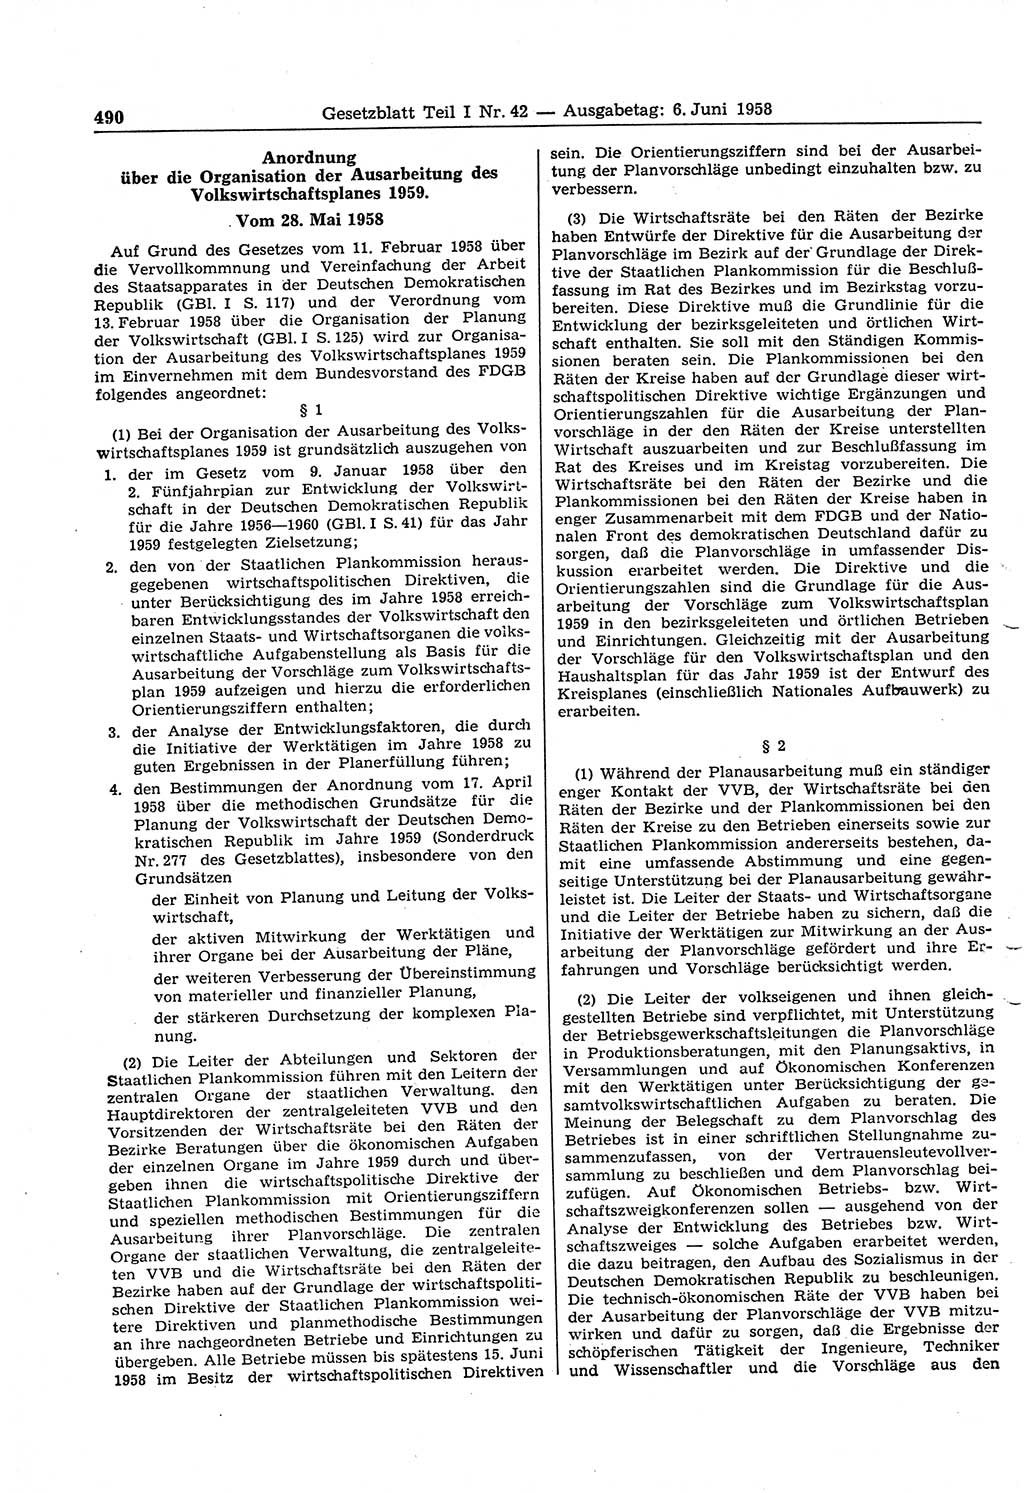 Gesetzblatt (GBl.) der Deutschen Demokratischen Republik (DDR) Teil Ⅰ 1958, Seite 490 (GBl. DDR Ⅰ 1958, S. 490)